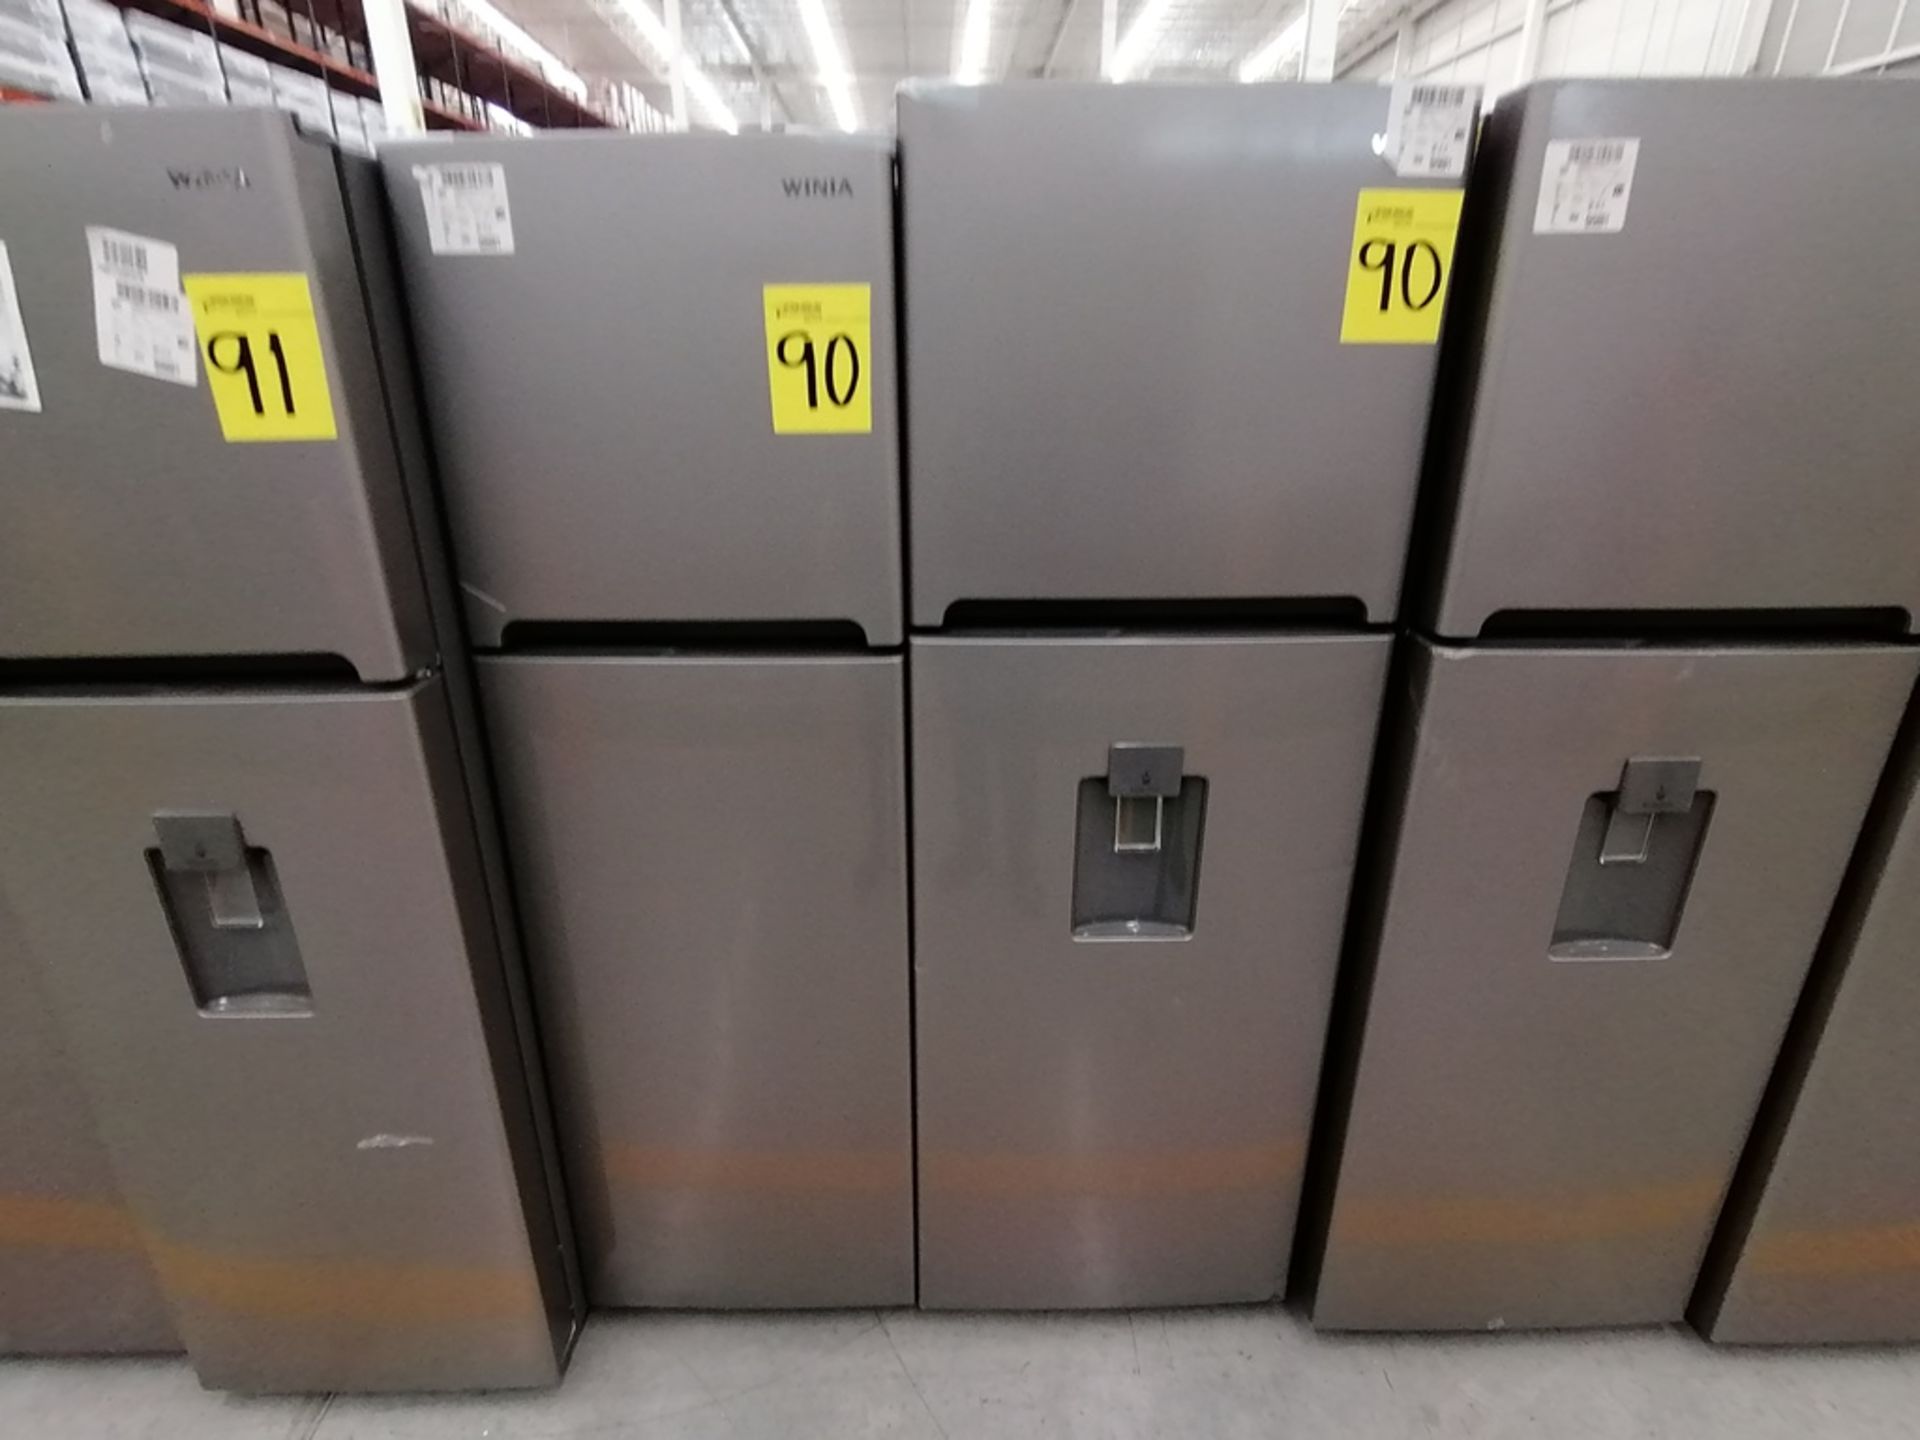 Lote de 2 Refrigeradores incluye: 1 Refrigerador, Marca Winia, Modelo DFR25120GN, Serie MR219N11624 - Image 3 of 15